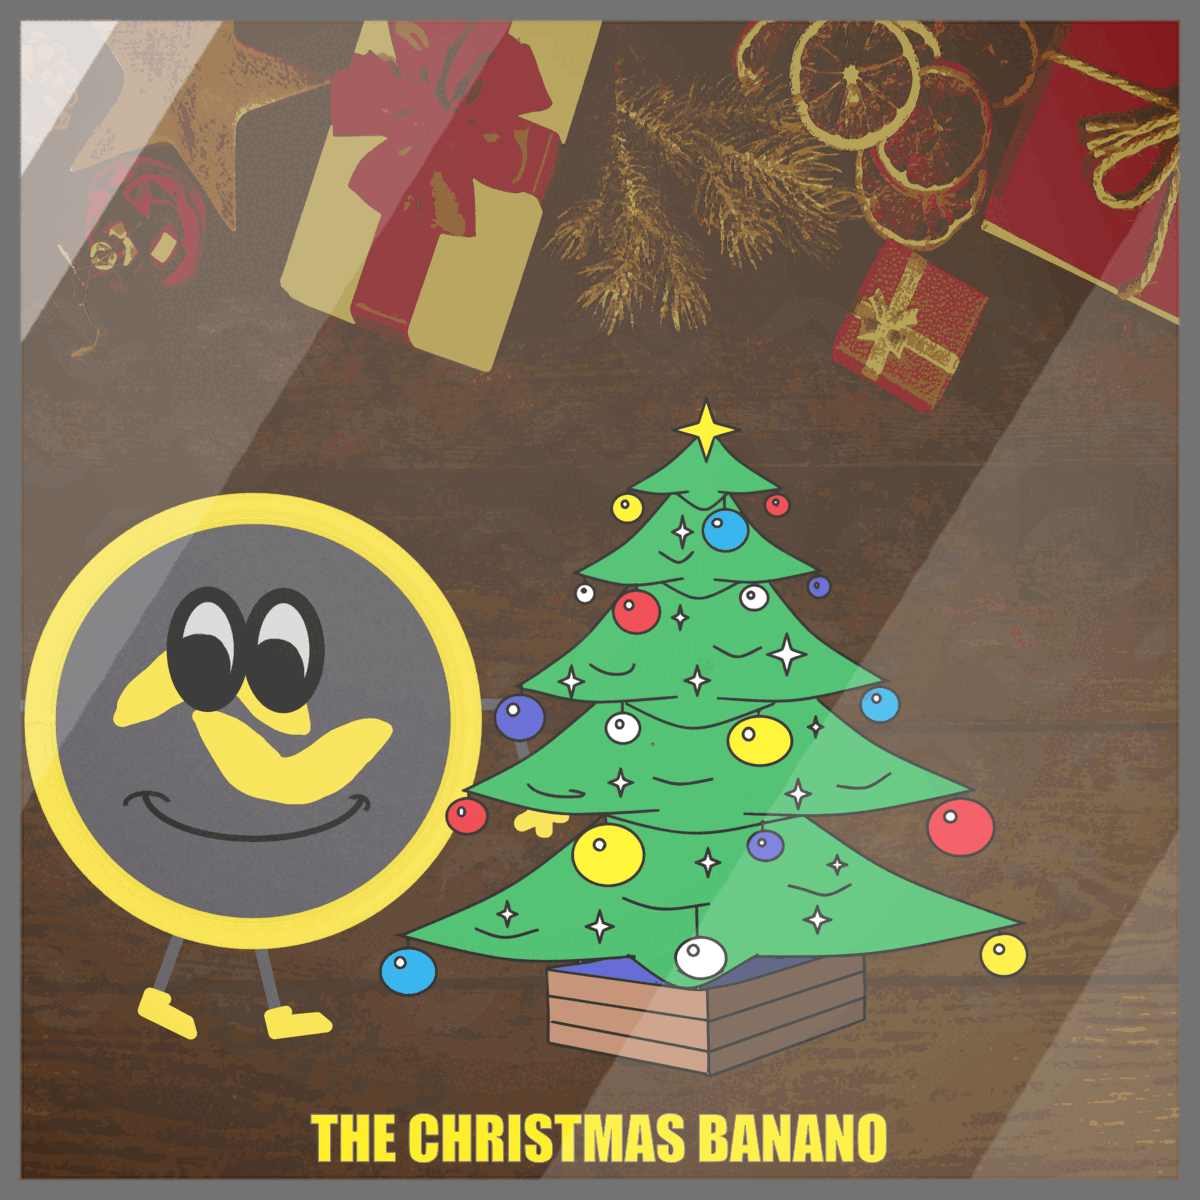 THE CHRISTMAS BANANO